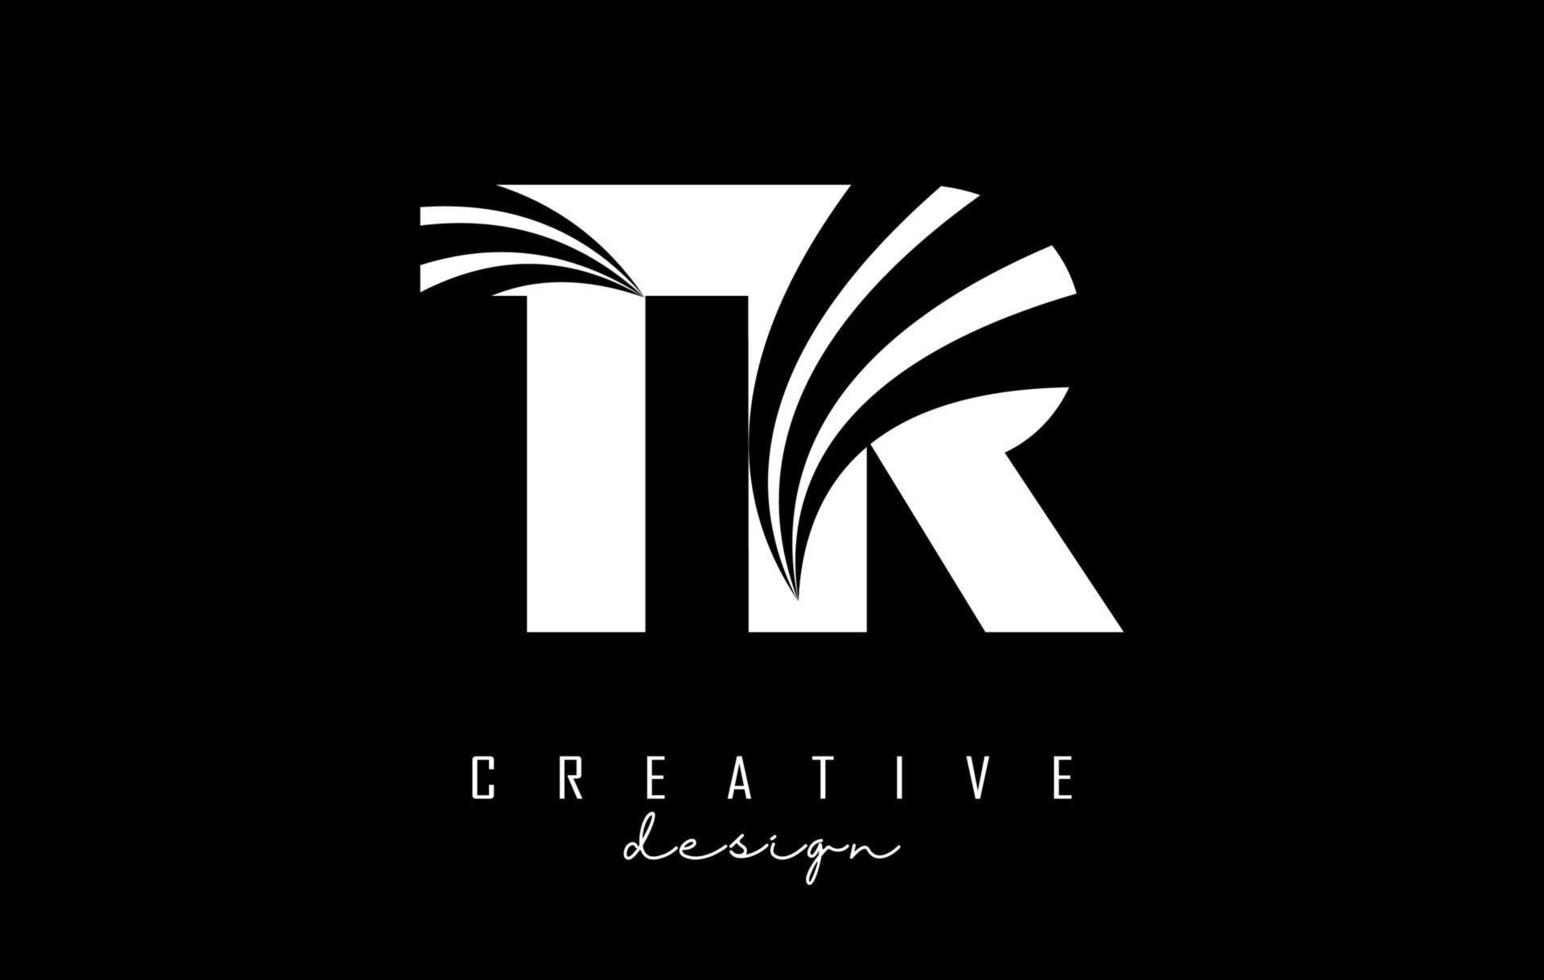 Logotipo creativo de letras blancas tr tr con líneas principales y diseño de concepto de carretera. letras con diseño geométrico. vector